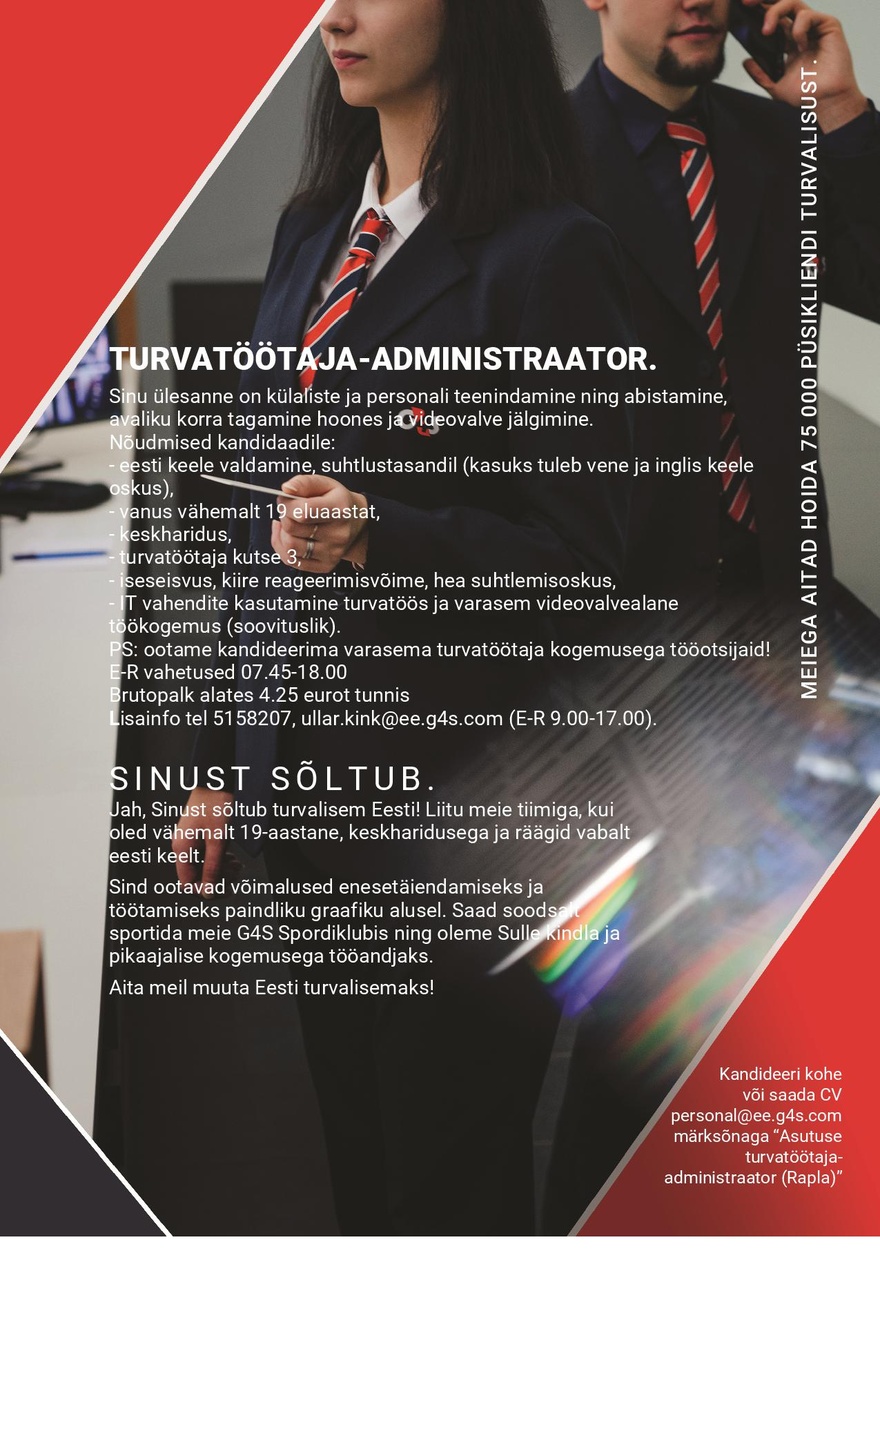 AS G4S Eesti Turvatöötaja-administraator (Rapla Maavalitsus)